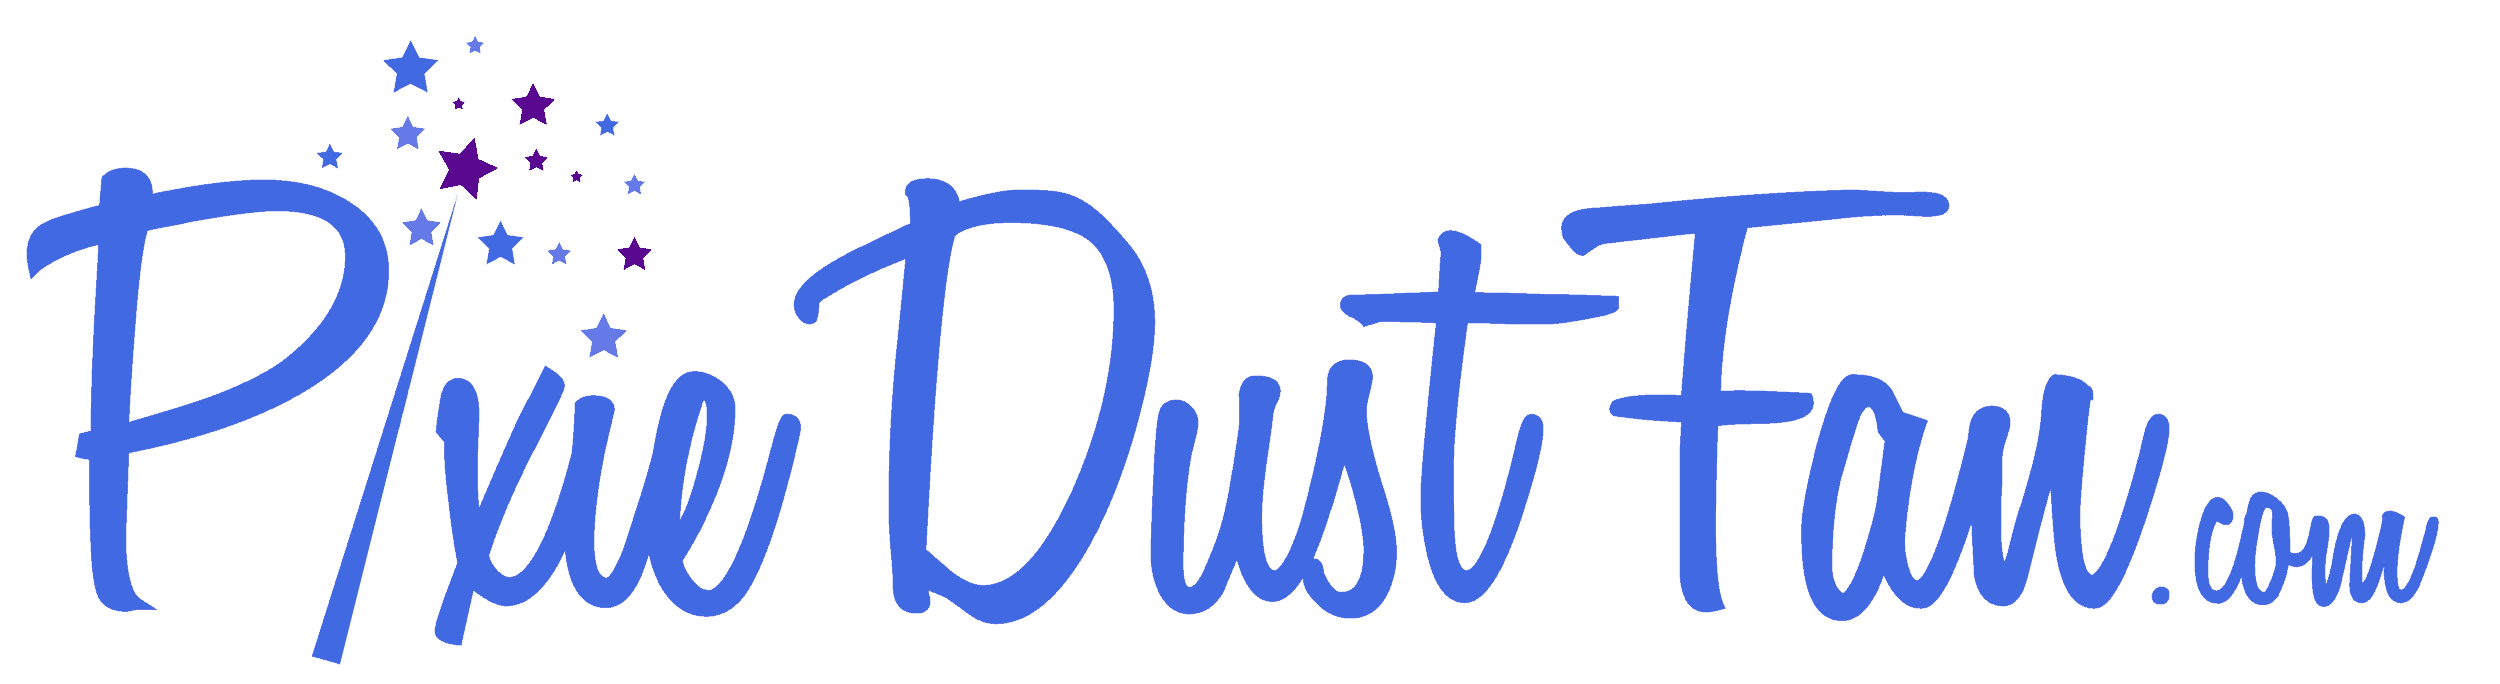 Pixie Dust Fan Logo